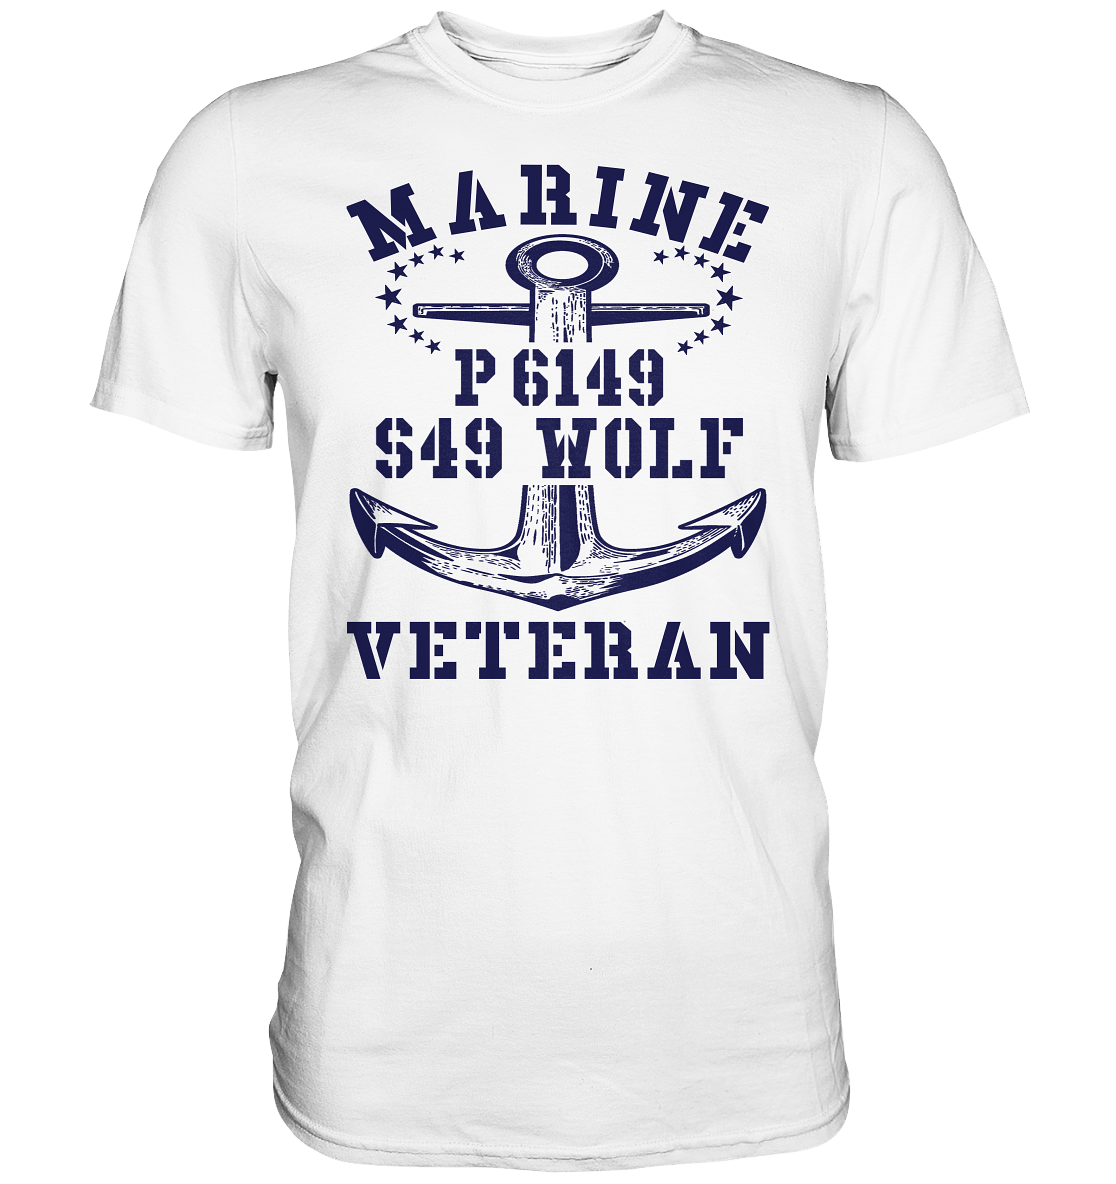 P6149 S49 WOLF Marine Veteran - Premium Shirt